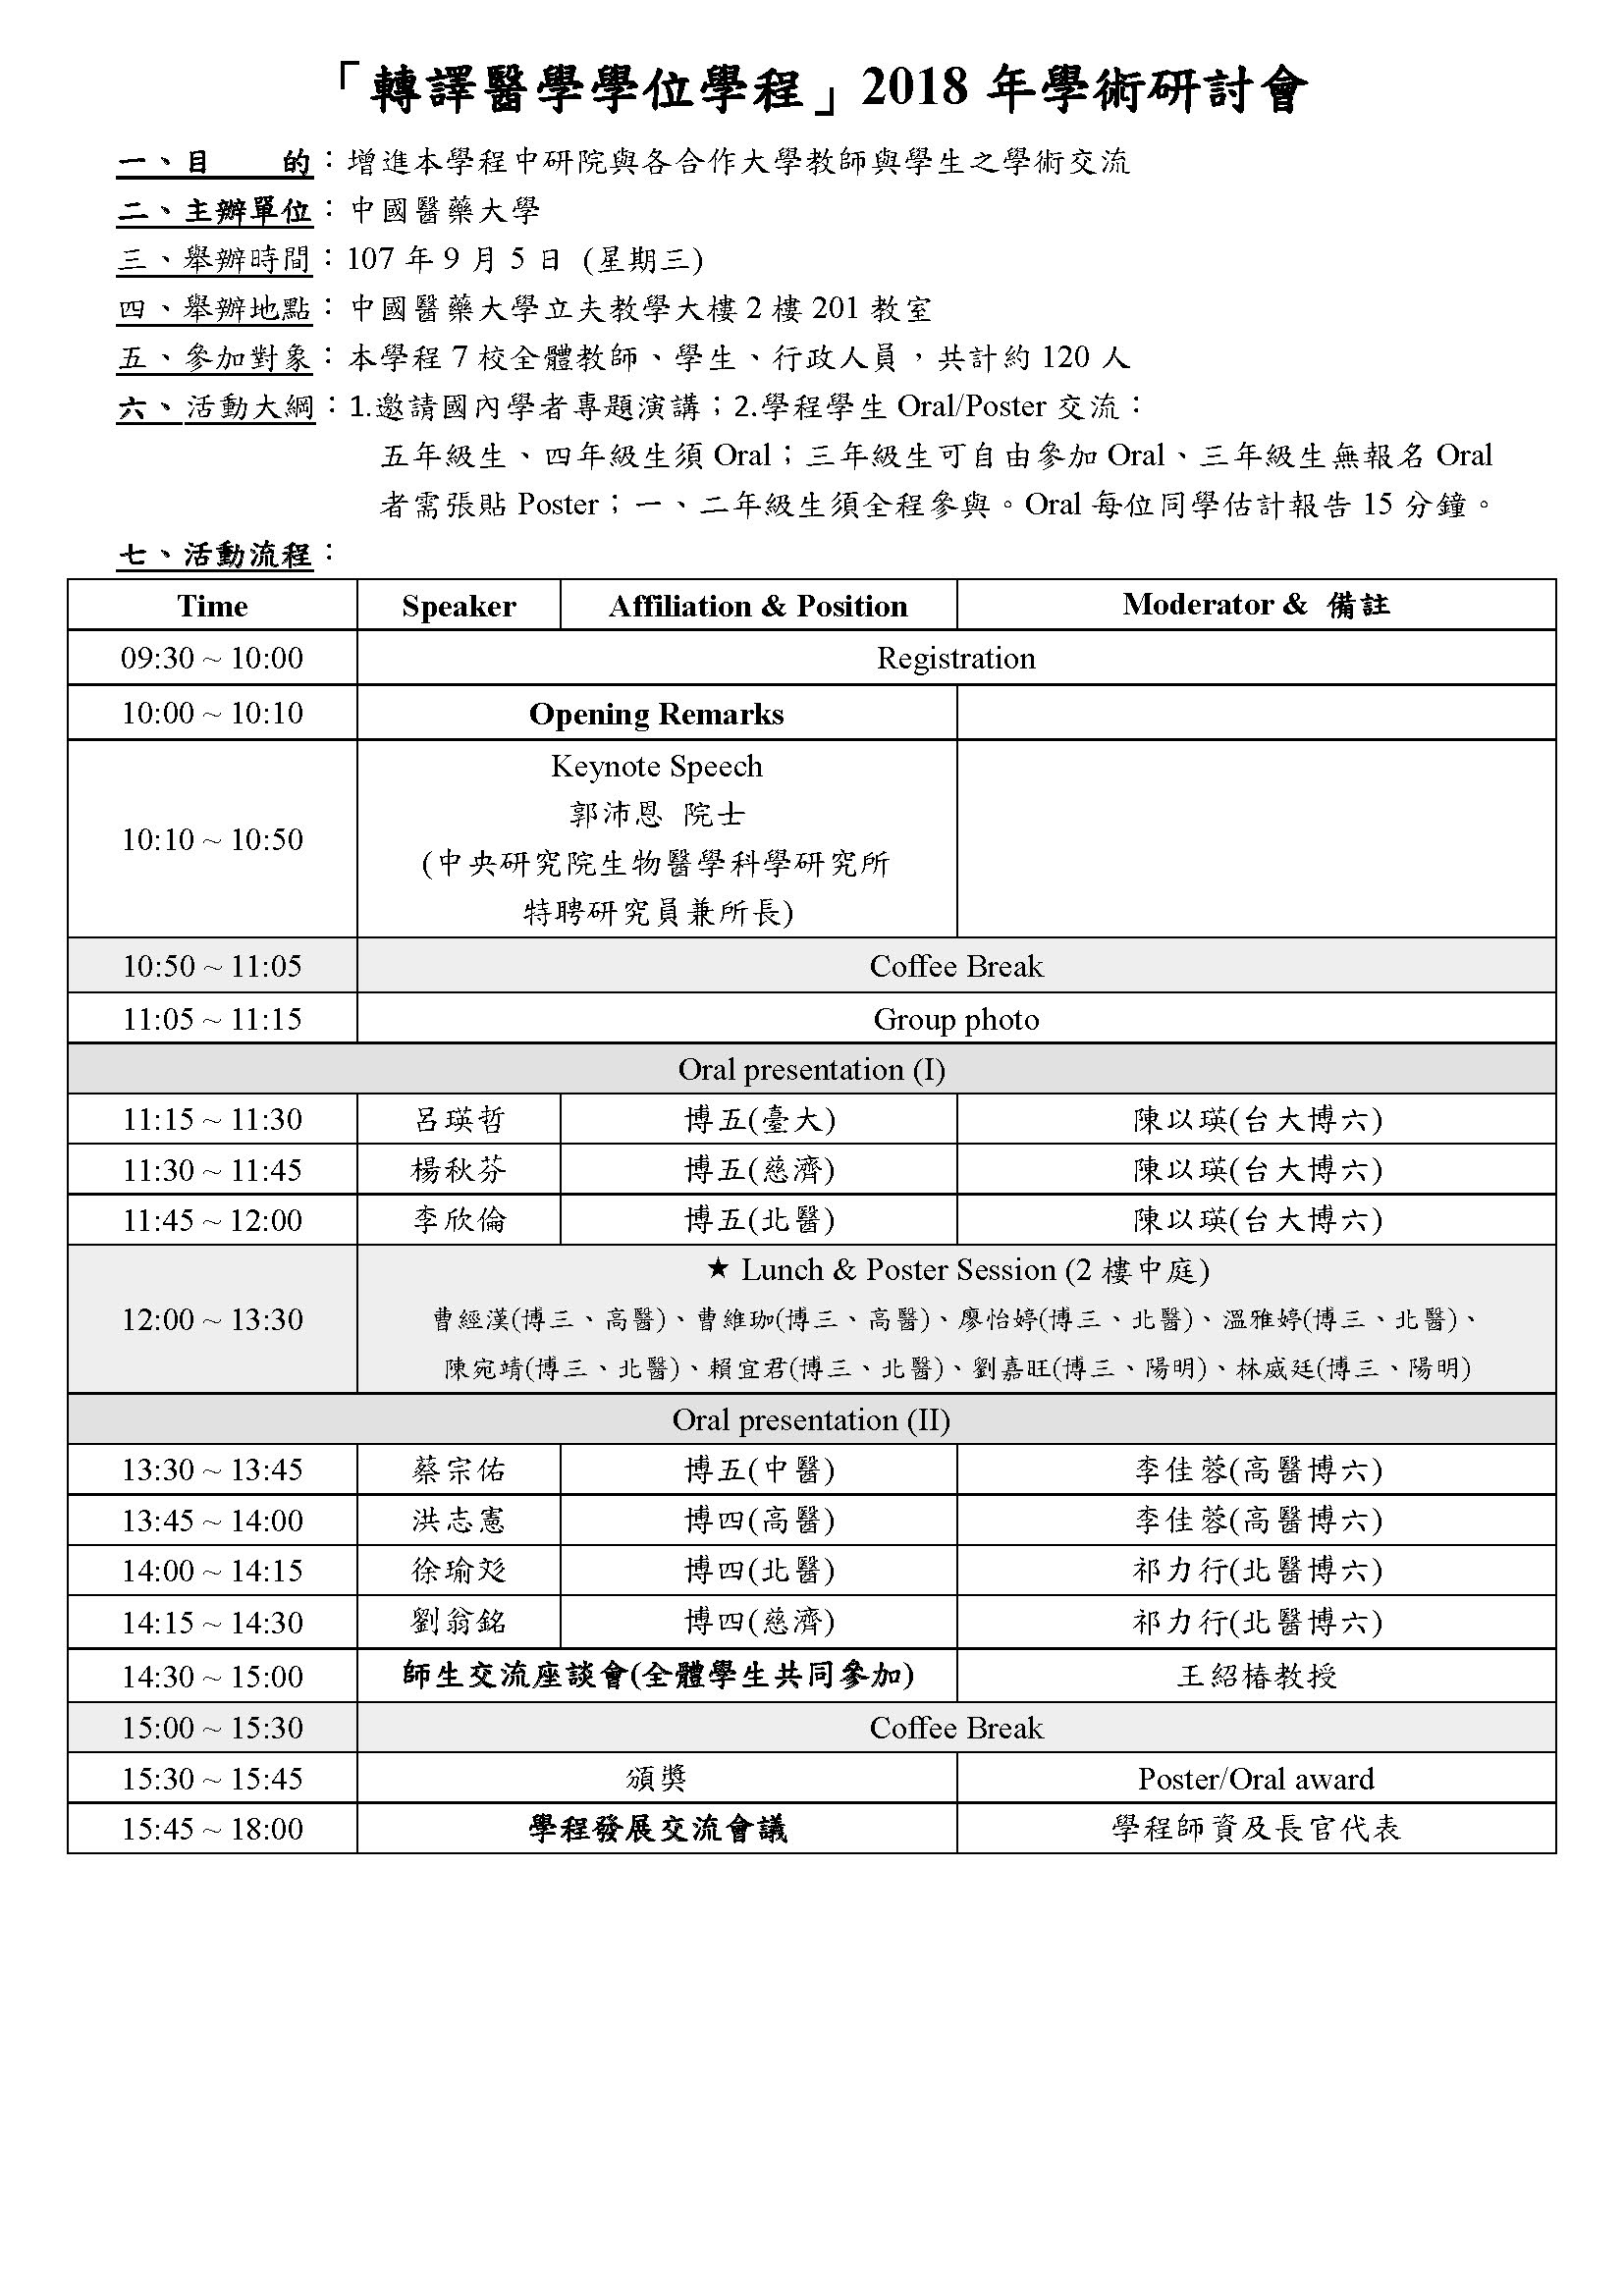 Schedule轉譯學程第5屆學術研討會 活動大綱及流程表 0801 STU